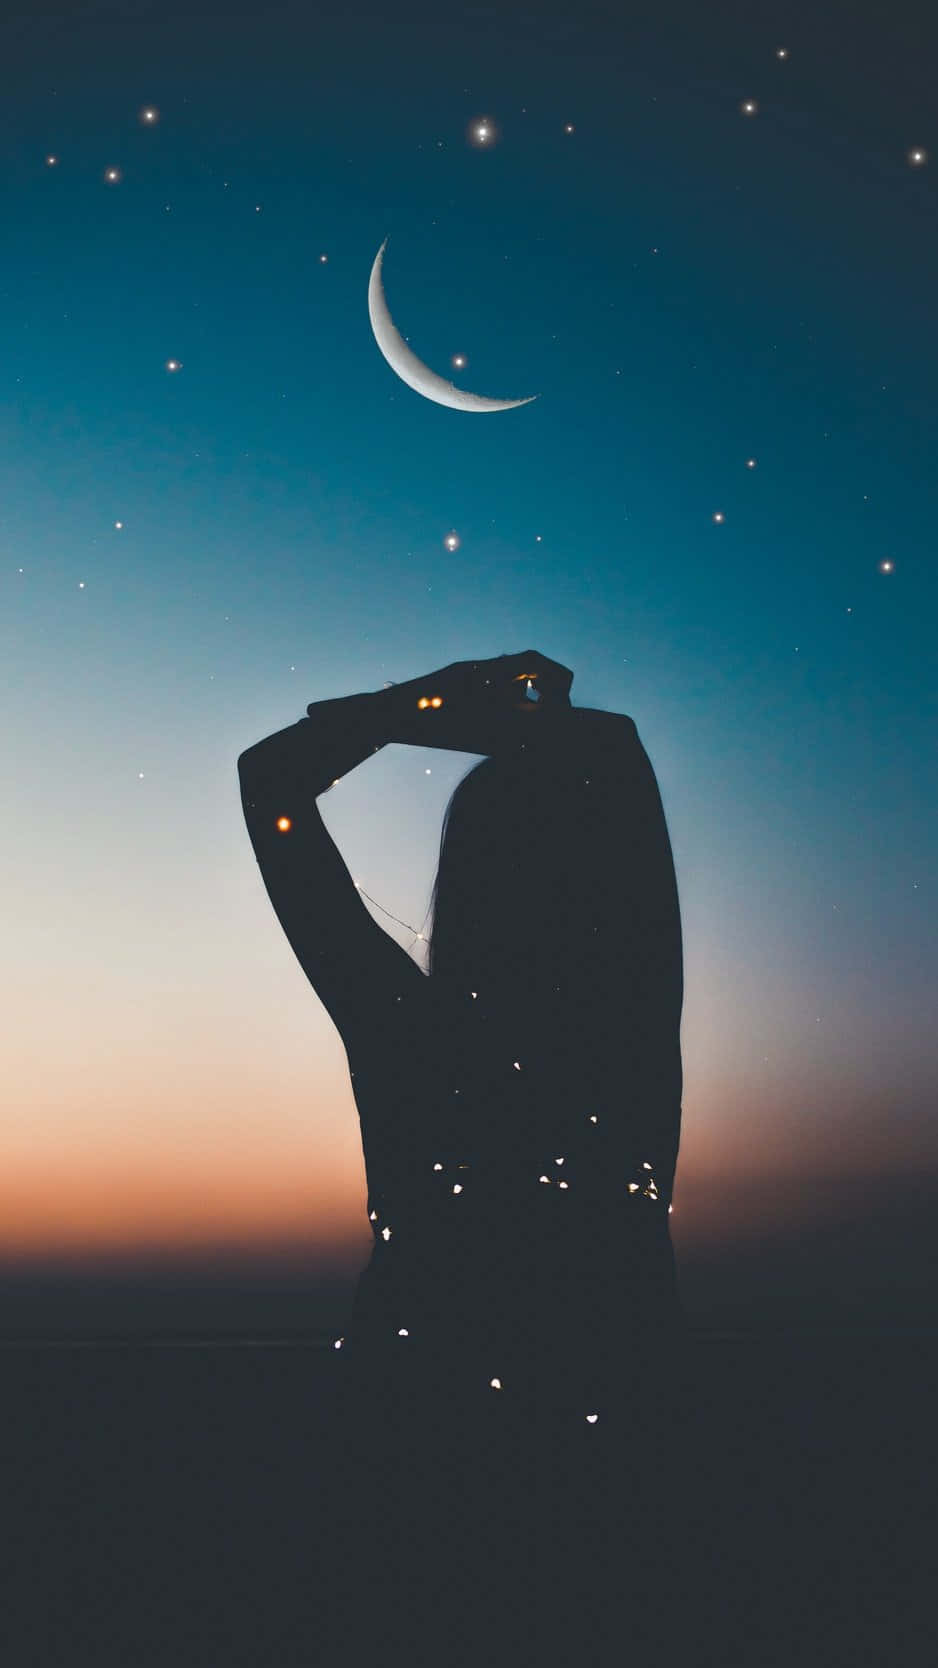 Imagende Una Chica En Silueta Contra Un Cielo Nocturno Con La Luna.